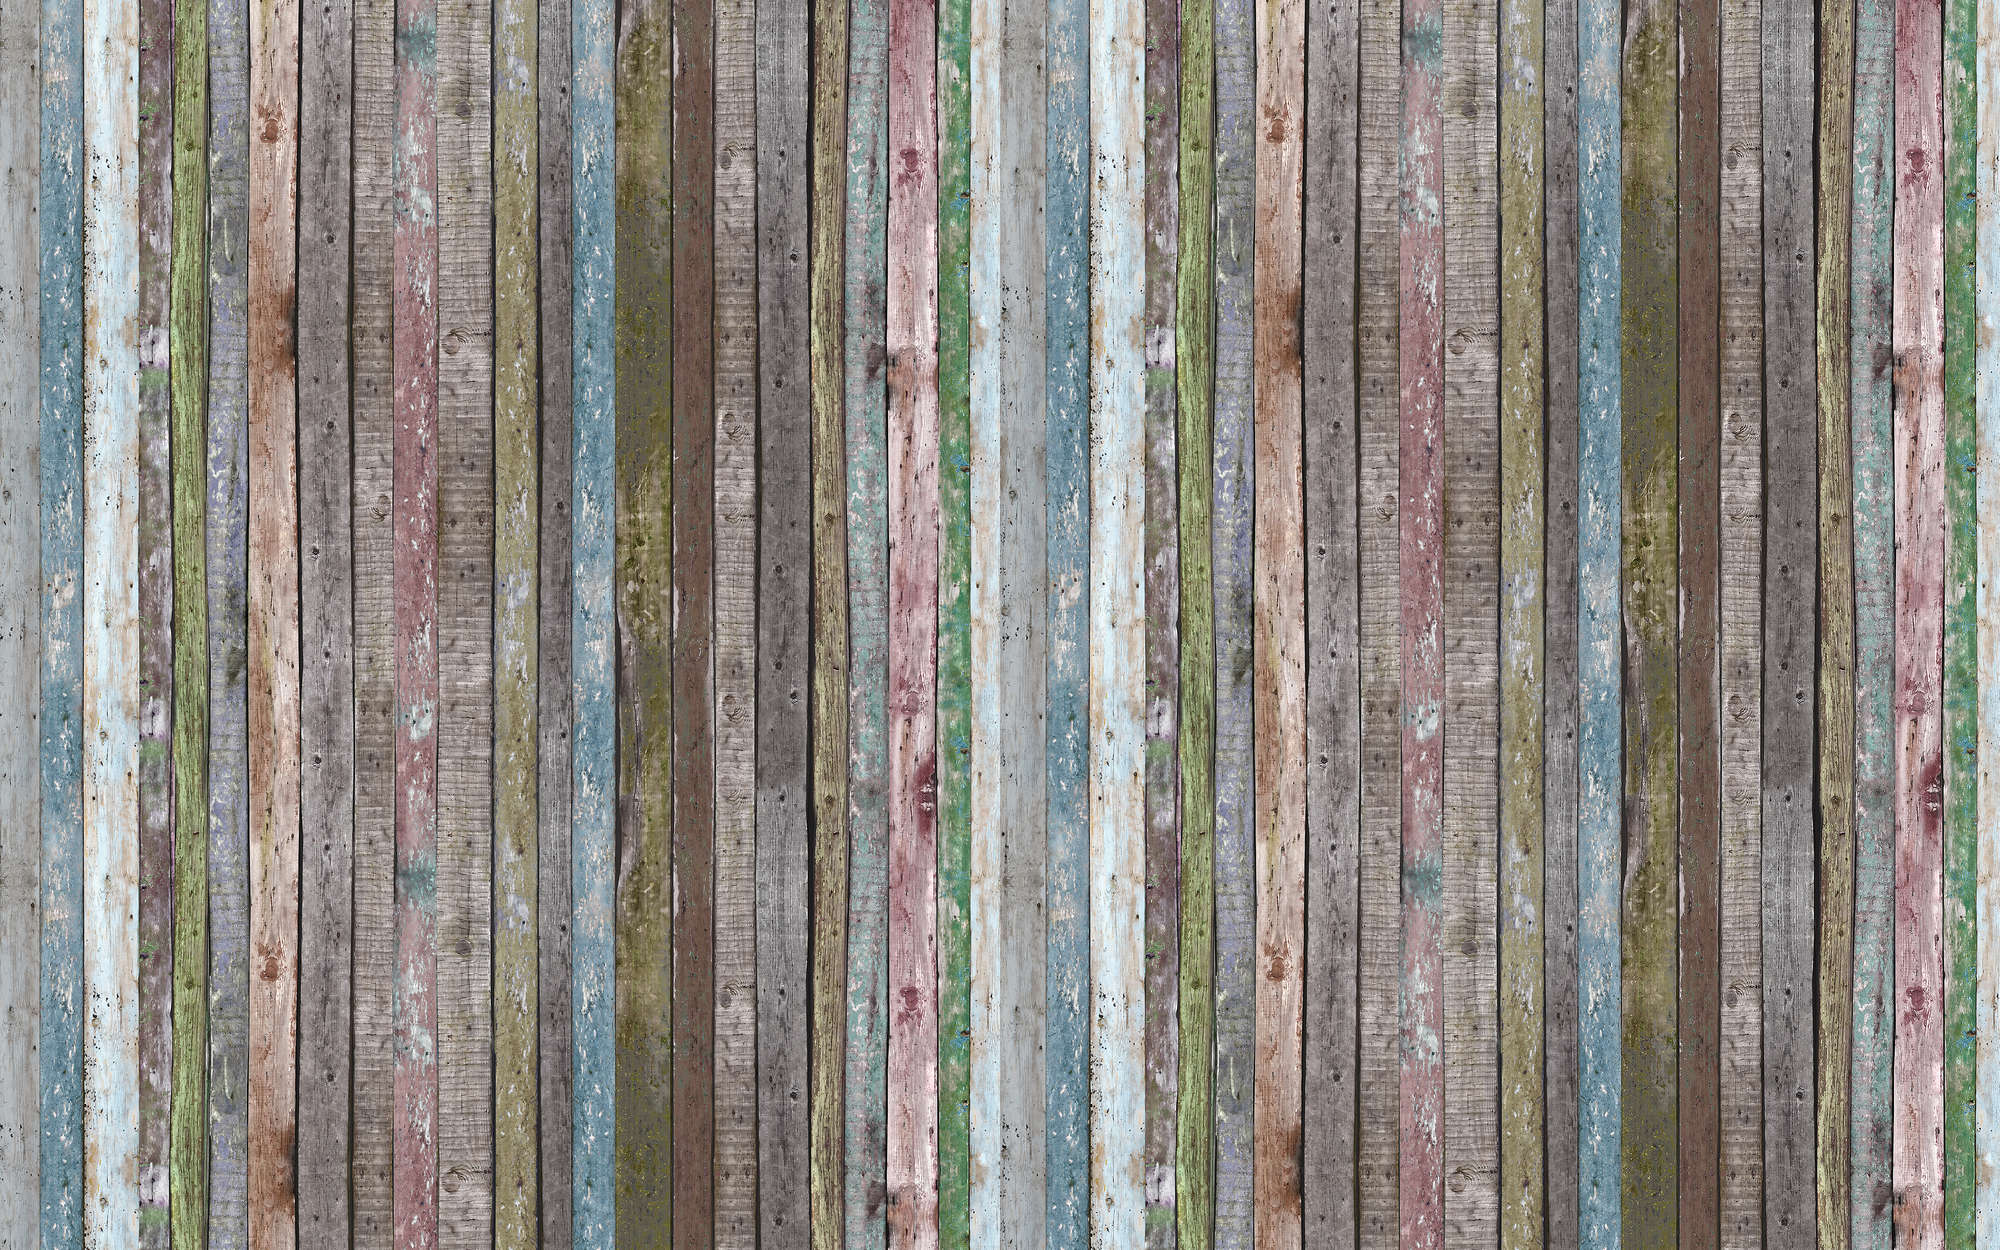             Fototapete Streifenbalken aus Holz – Perlmutt Glattvlies
        